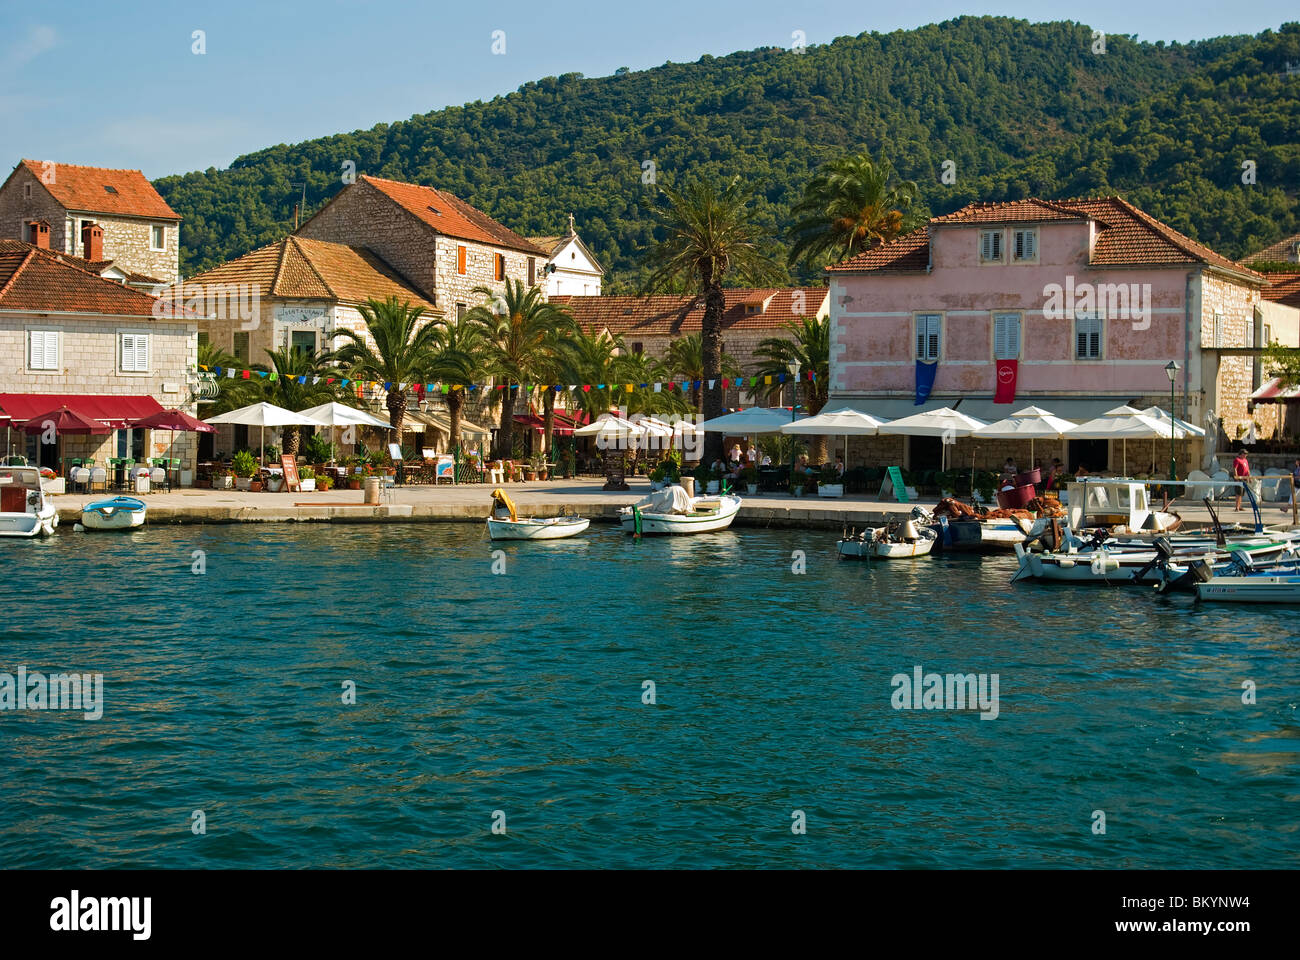 Kroatien; Hrvartska; Fernsehreihe, Insel Hvar; Gebundene gerader Grad, Altstädter Ring, Cafes, Fishboats am Ufer der Altstadt Stockfoto